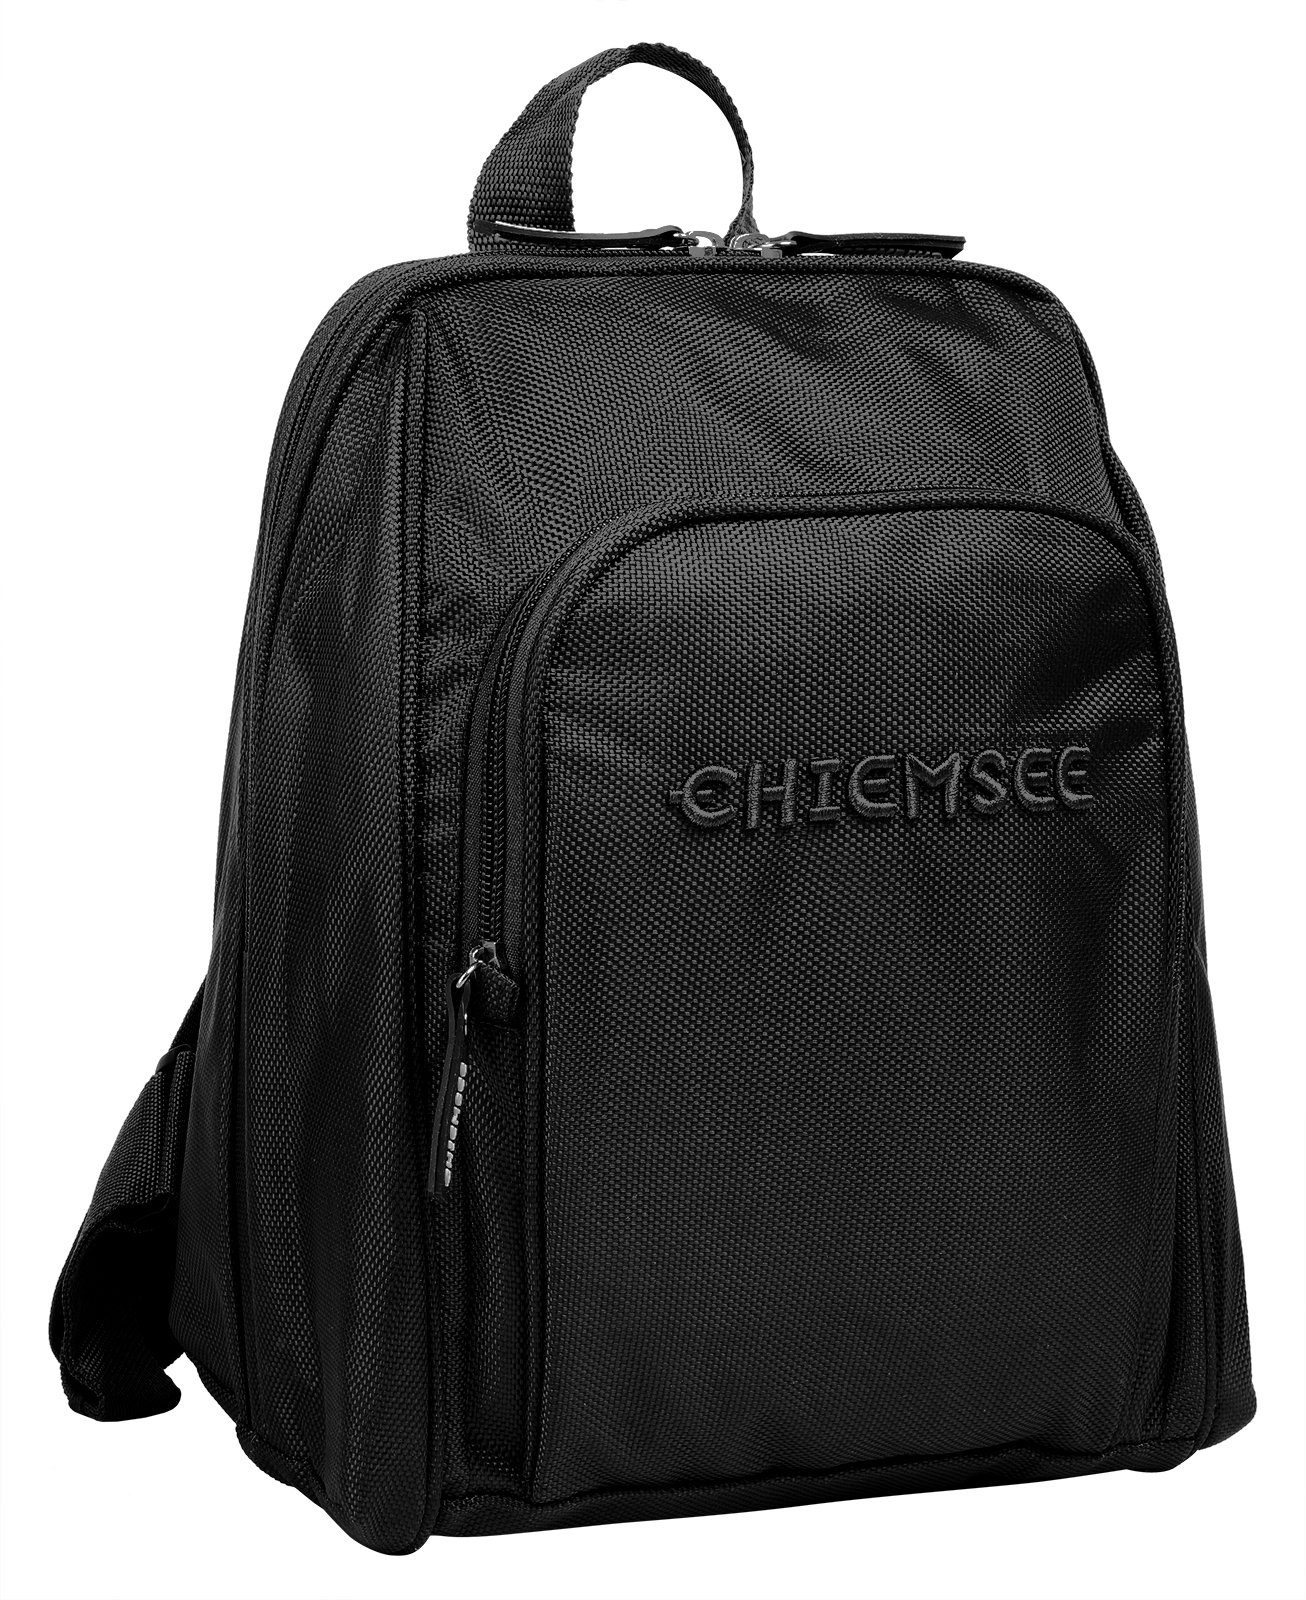 Cityrucksack schwarz Chiemsee